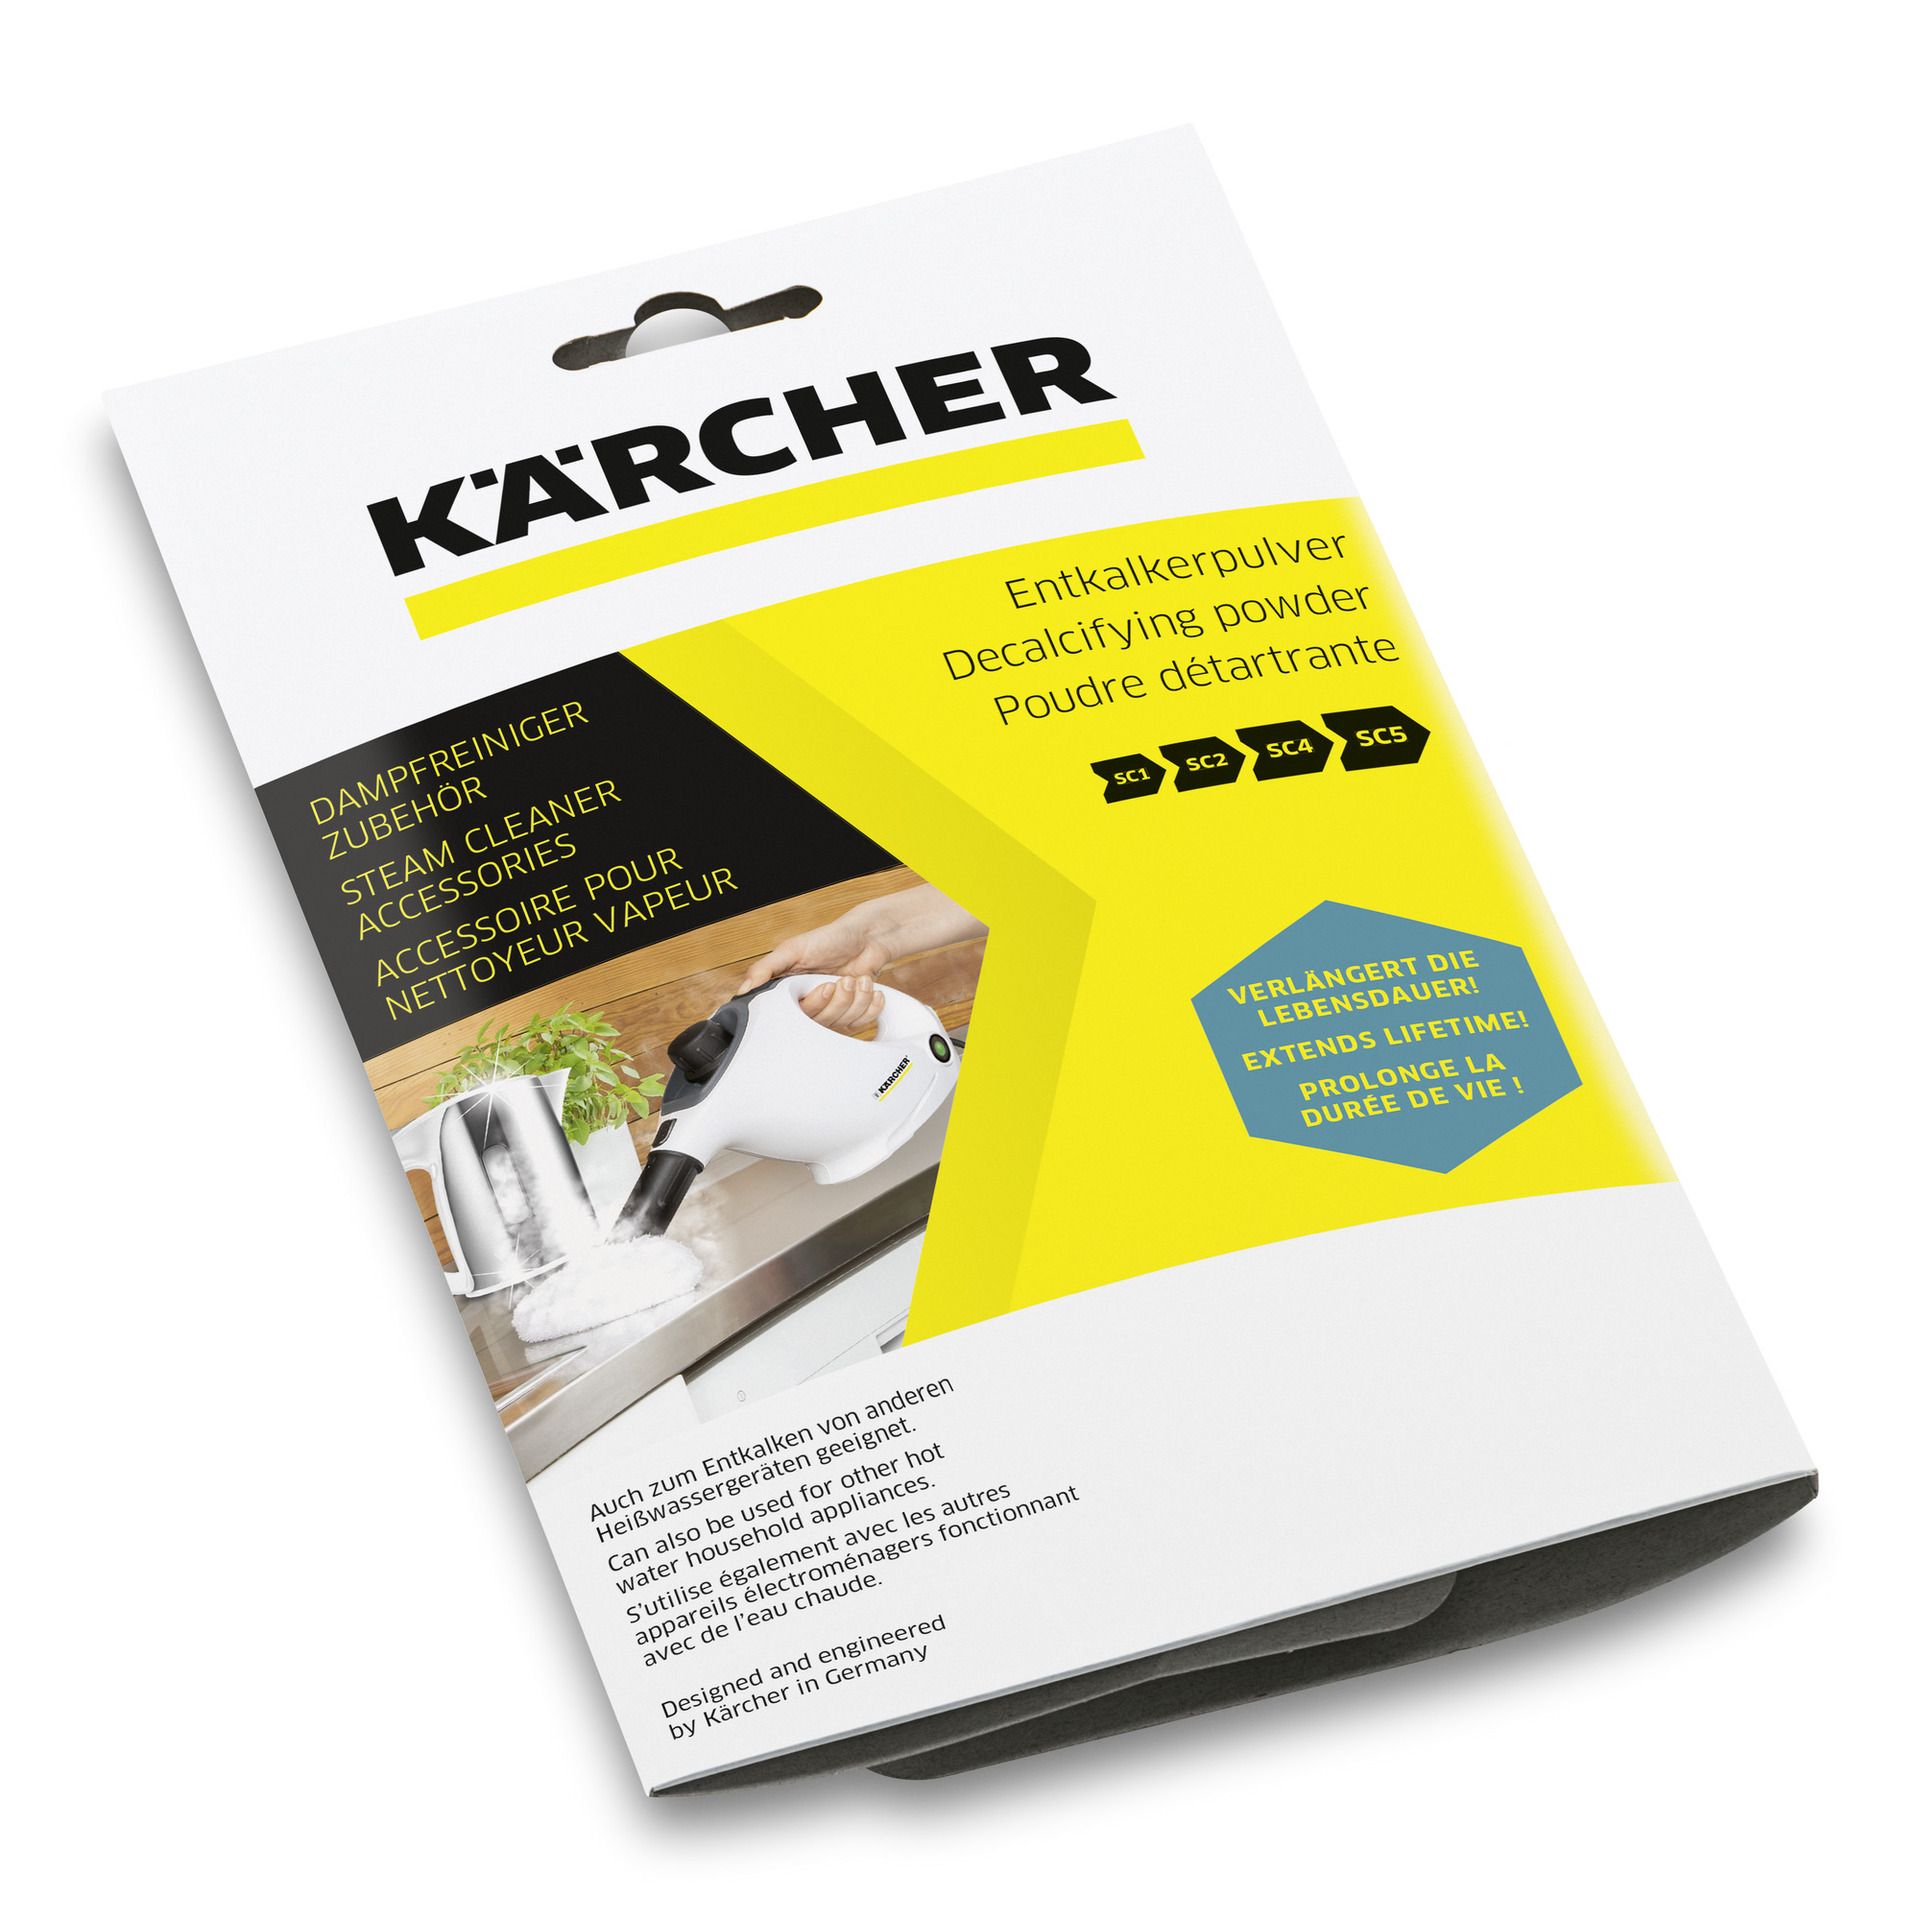 Kärcher, Alfred Vertriebs GmbH Entkalkerpulver RM 511 6x17g